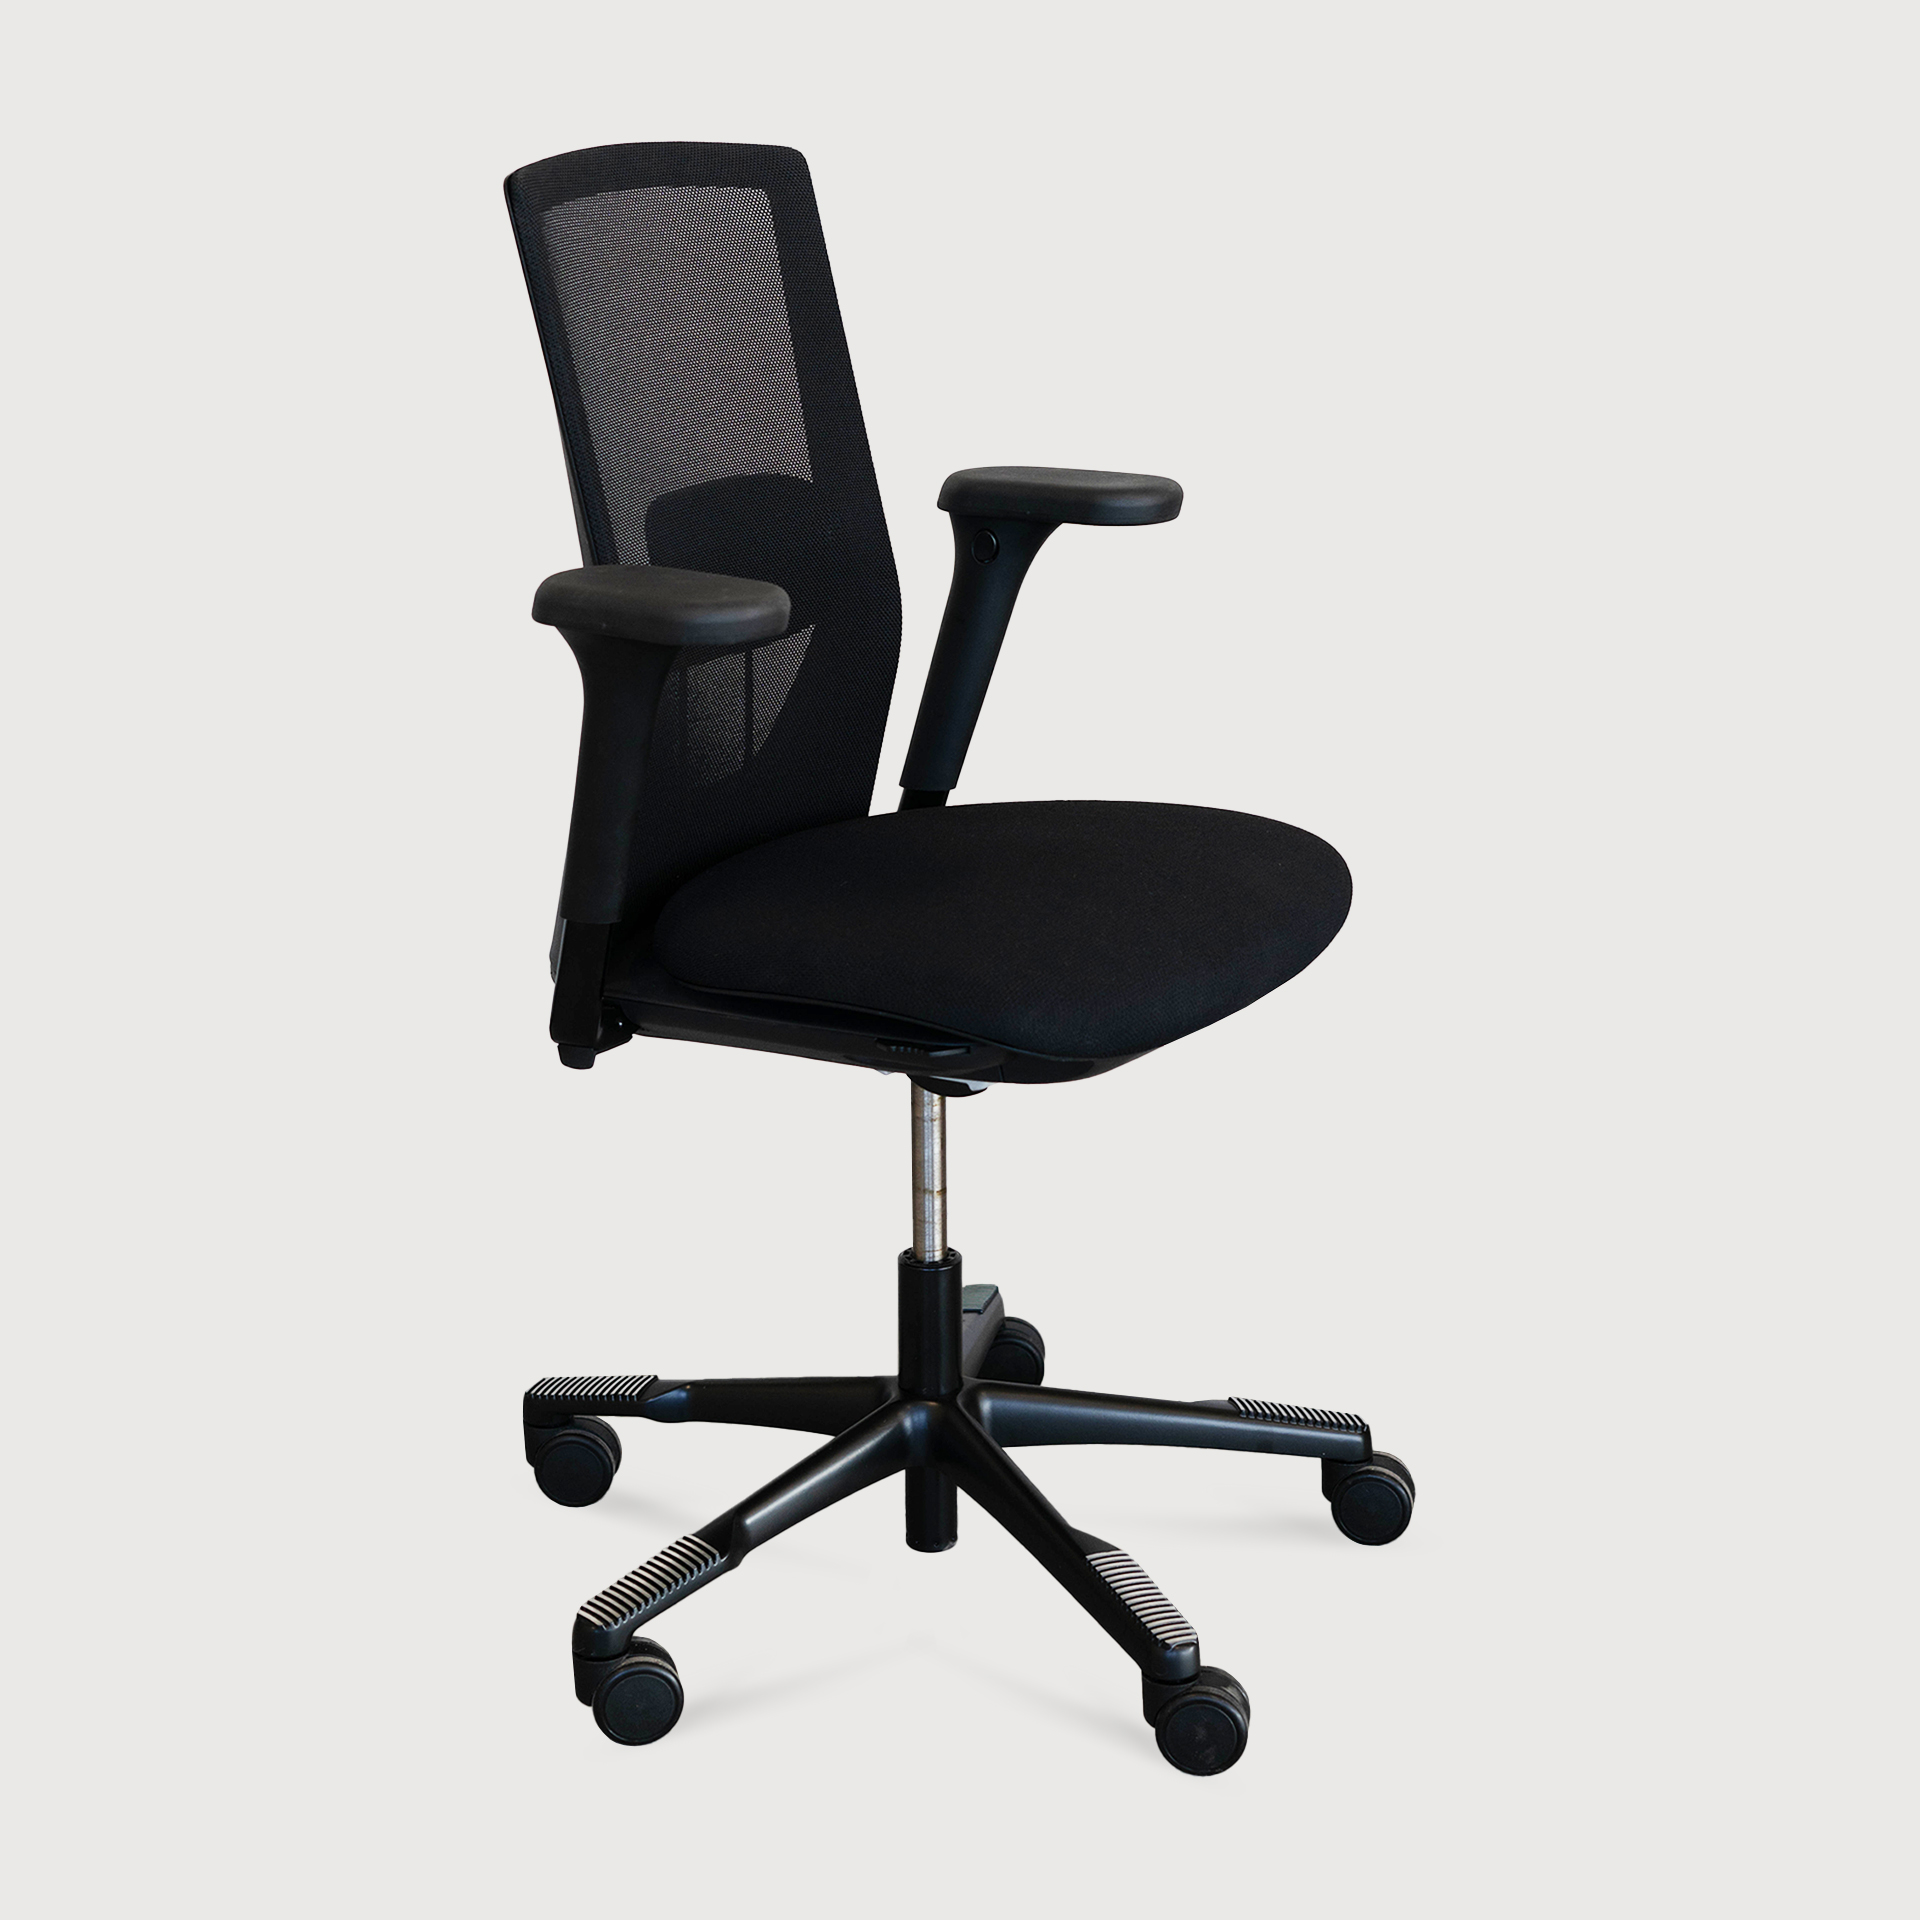 [L1100] Office chair Futu mesh 1100